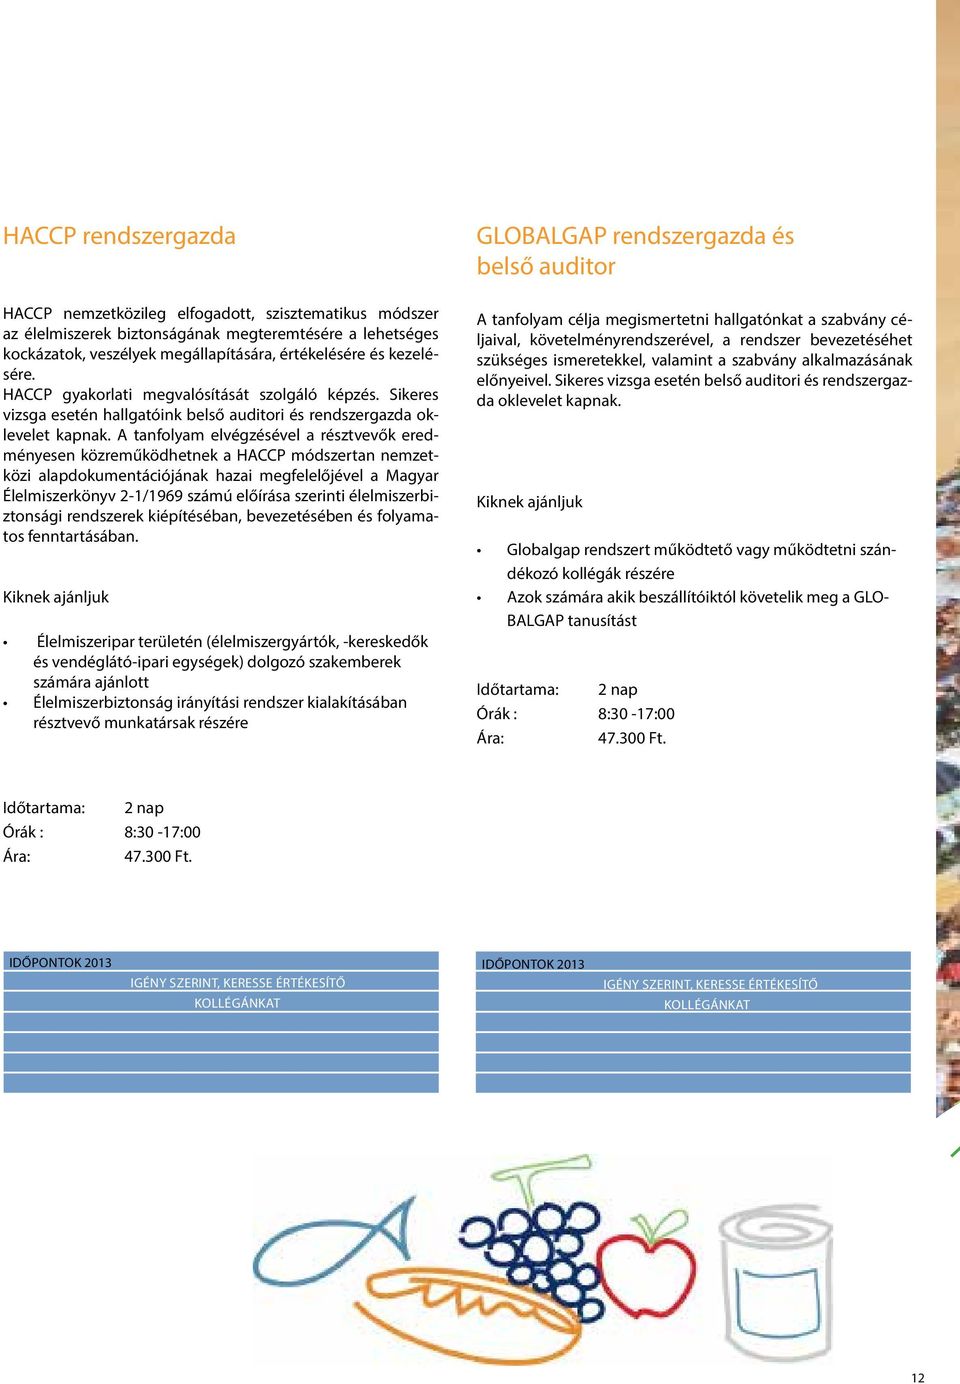 A tanfolyam elvégzésével a résztvevők eredményesen közreműködhetnek a HACCP módszertan nemzetközi alapdokumentációjának hazai megfelelőjével a Magyar Élelmiszerkönyv 2-1/1969 számú előírása szerinti